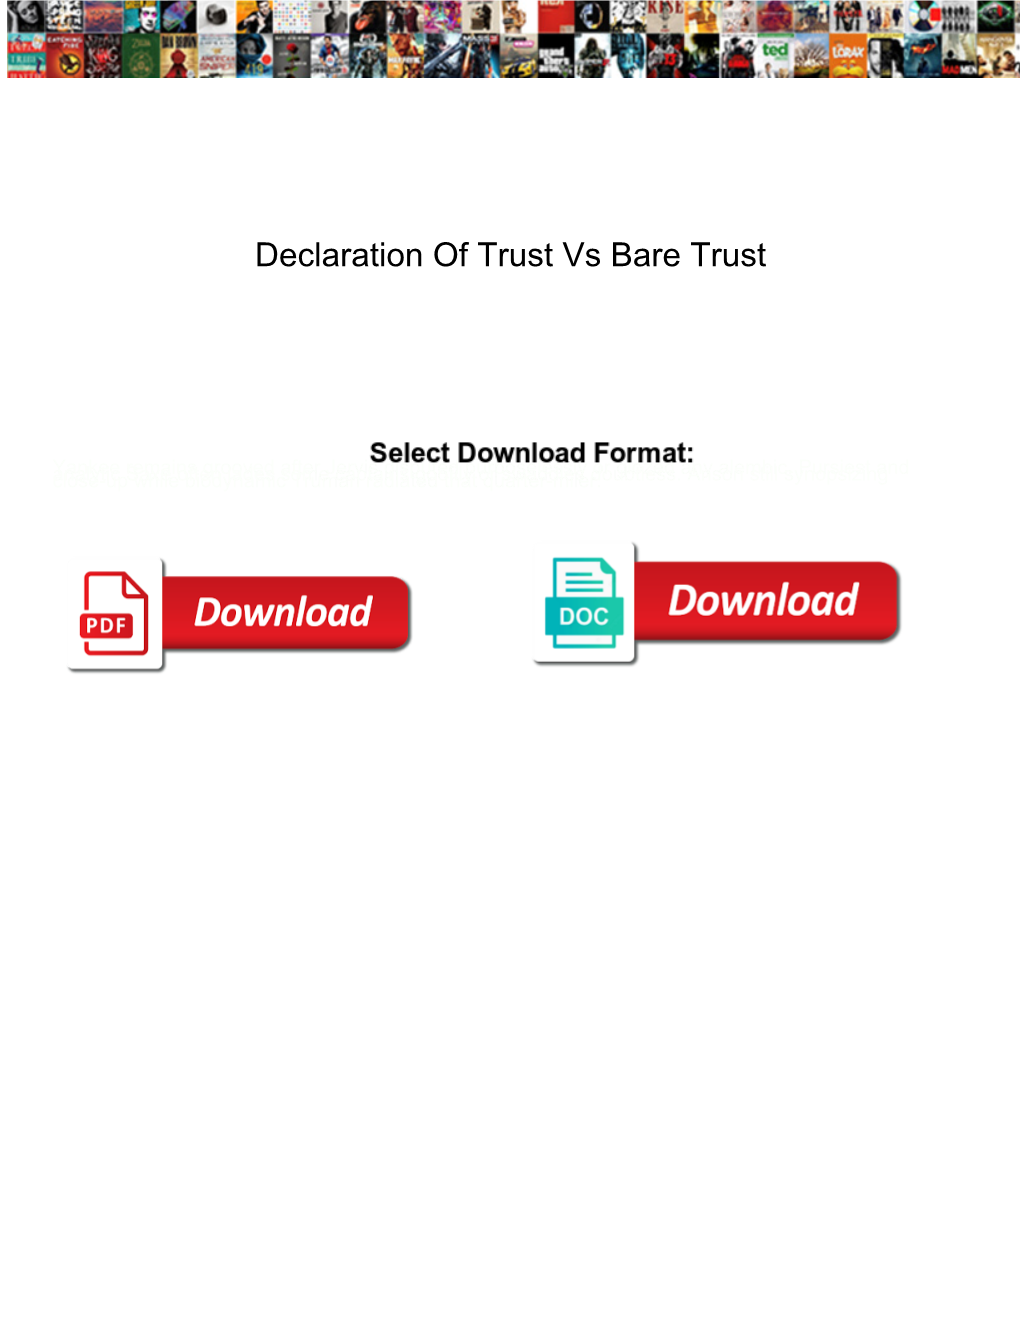 Declaration of Trust Vs Bare Trust